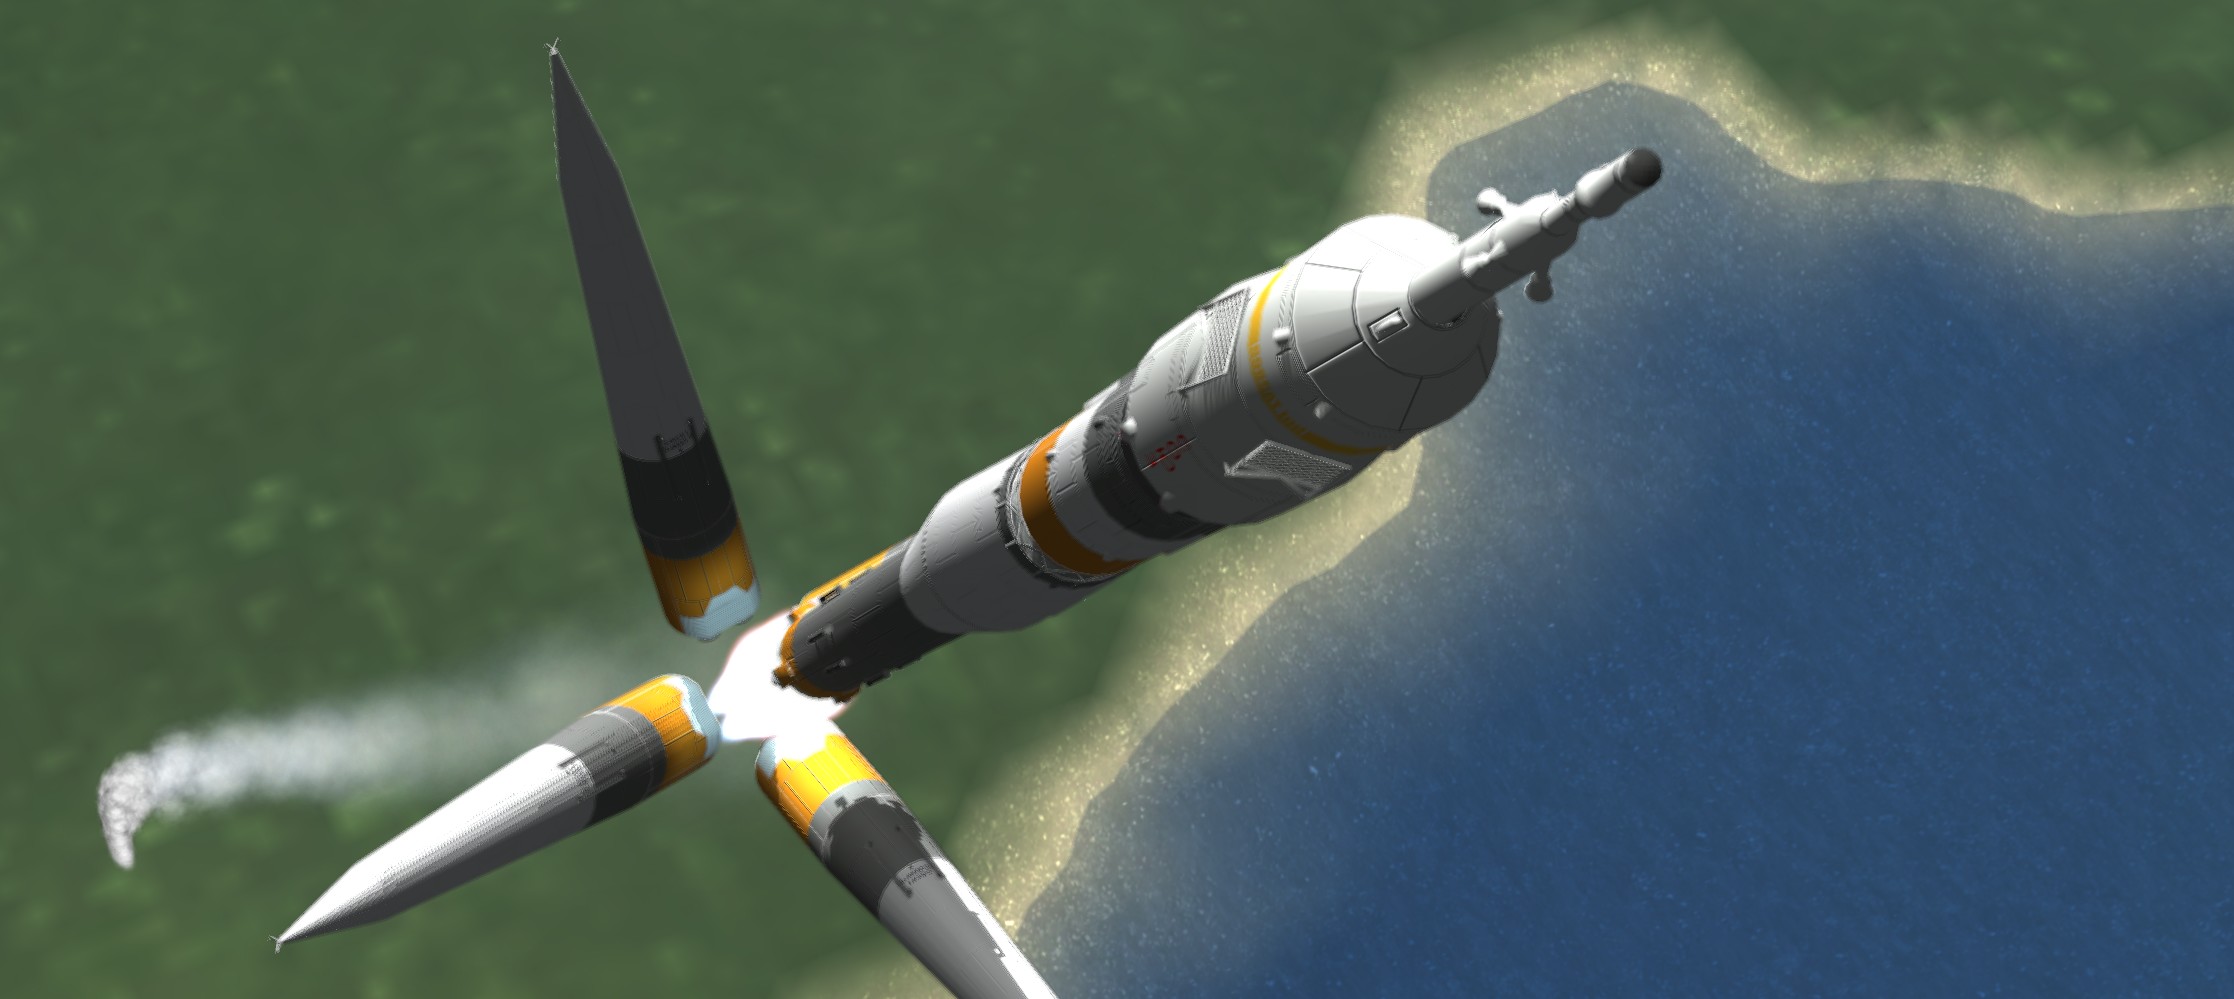 Une fusée Soyouz qui largue ses boosters après le décollage.